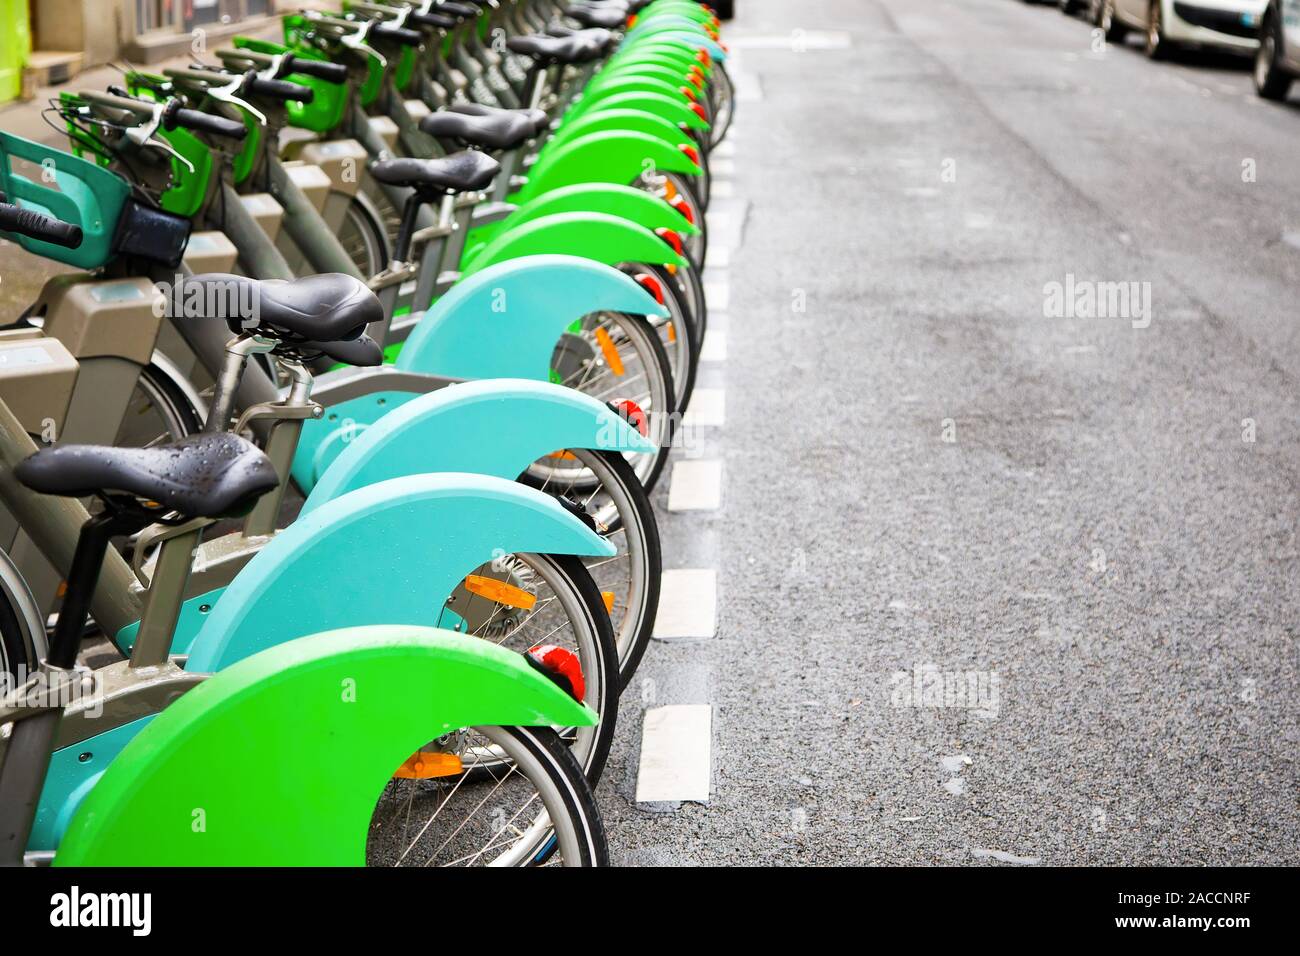 Les vélos électriques vert à louer en centre ville, parking écologique Banque D'Images